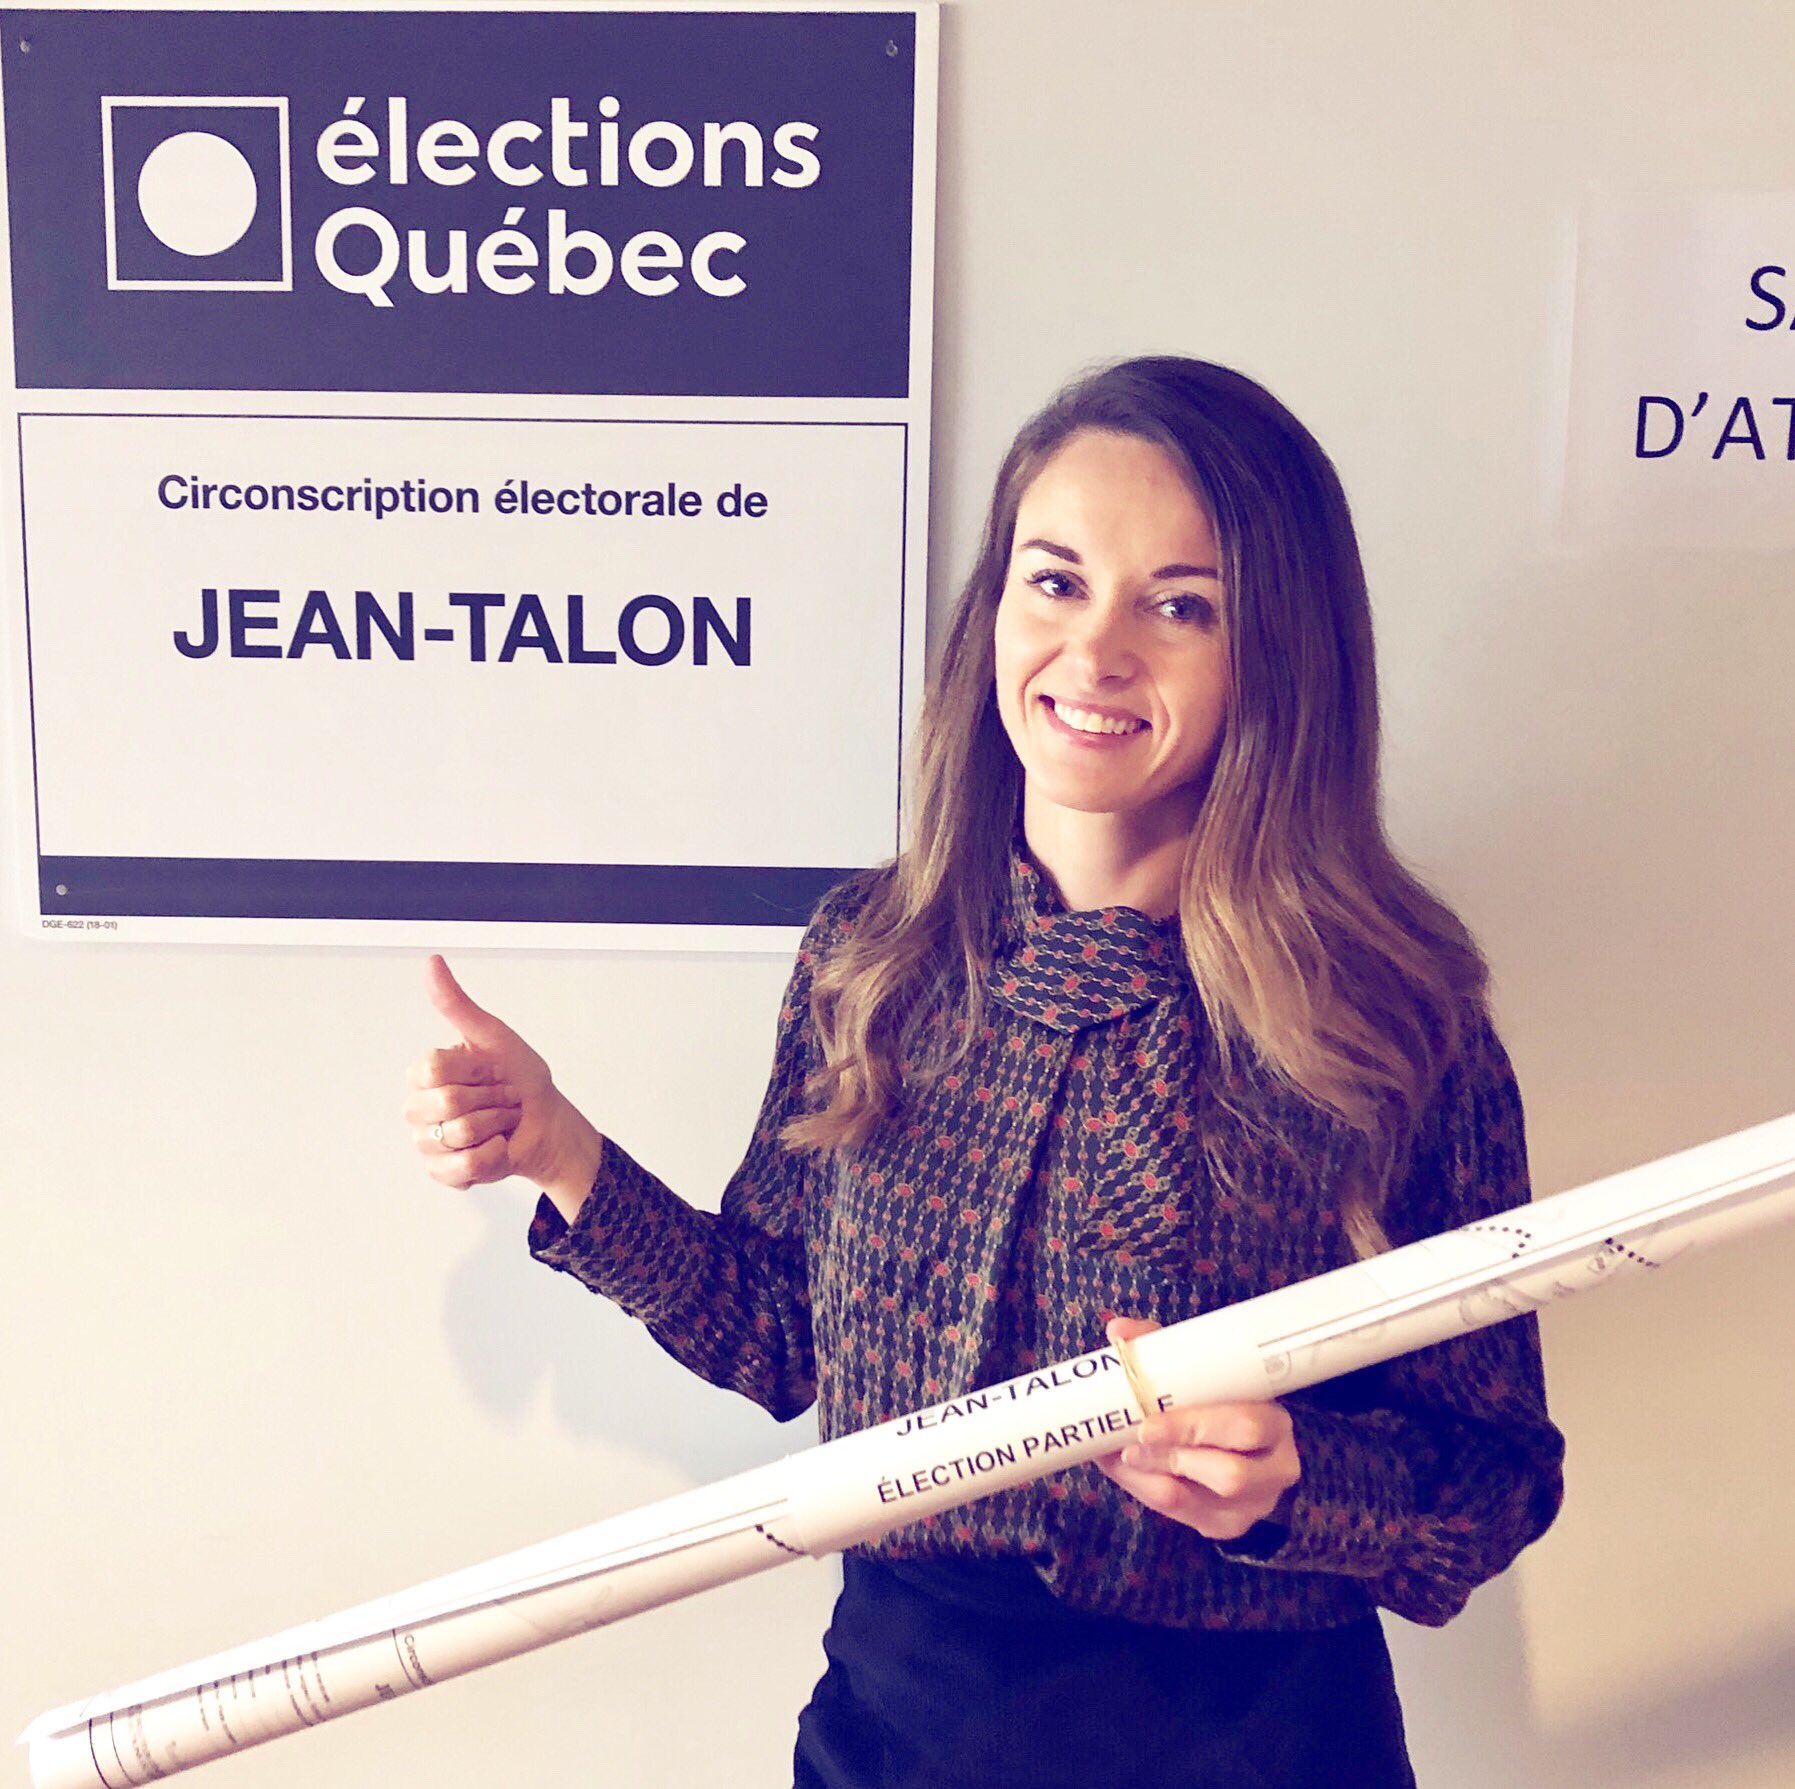 Joëlle Boutin on Twitter: "Ça y est! Je viens de déposer mon acte de  candidature pour l'élection partielle de Jean-Talon :) Je suis toujours  convaincue que la politique peut être un véhicule